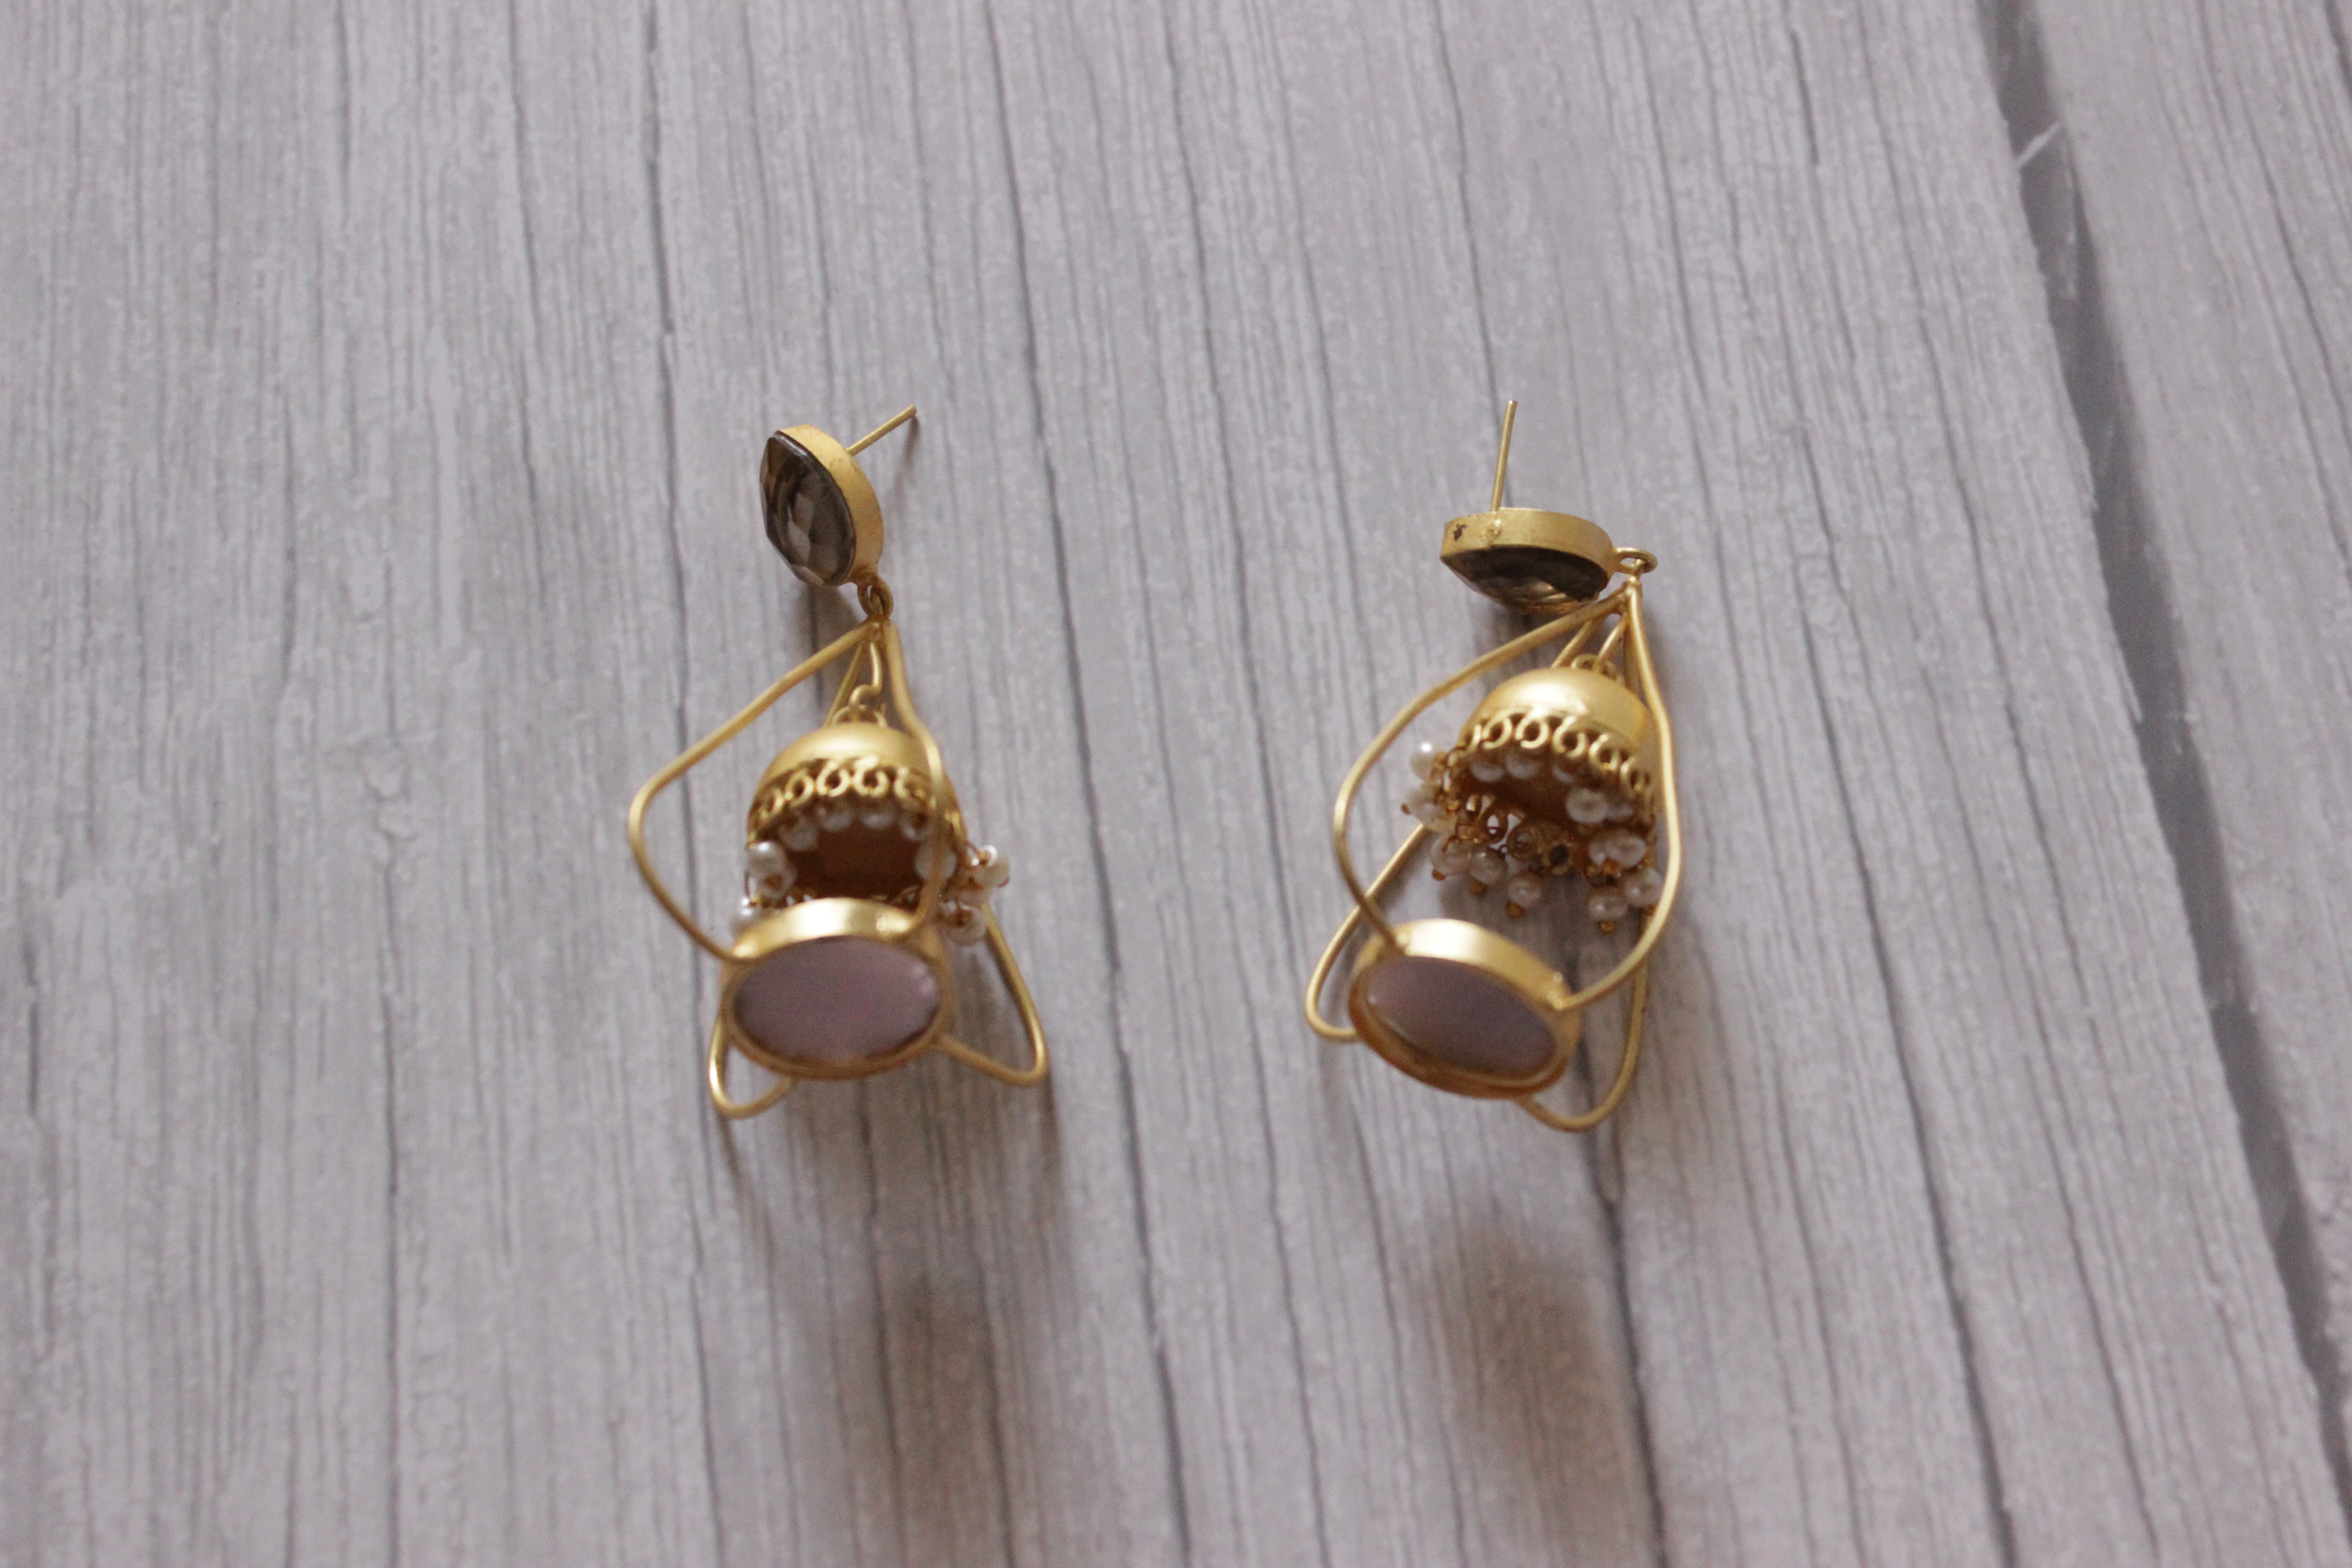 Elegant Brass Lantern Shape Dangler Jhumka Earrings